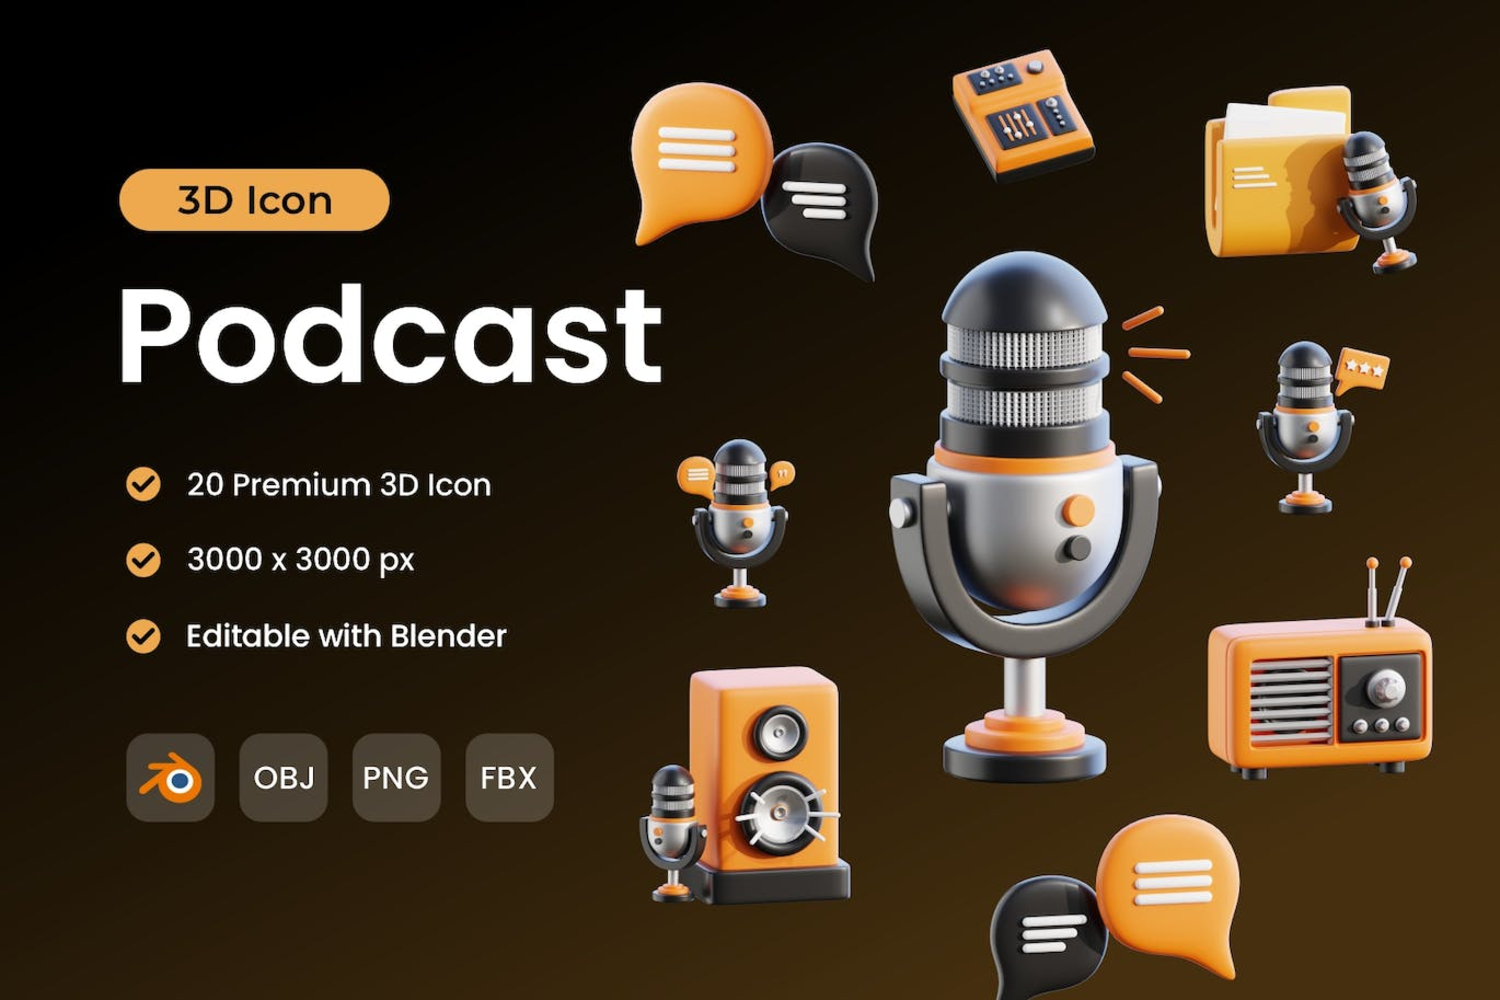 5406 20个适合播客主题的3D图标素材包 Podcast 3D Icon Pack